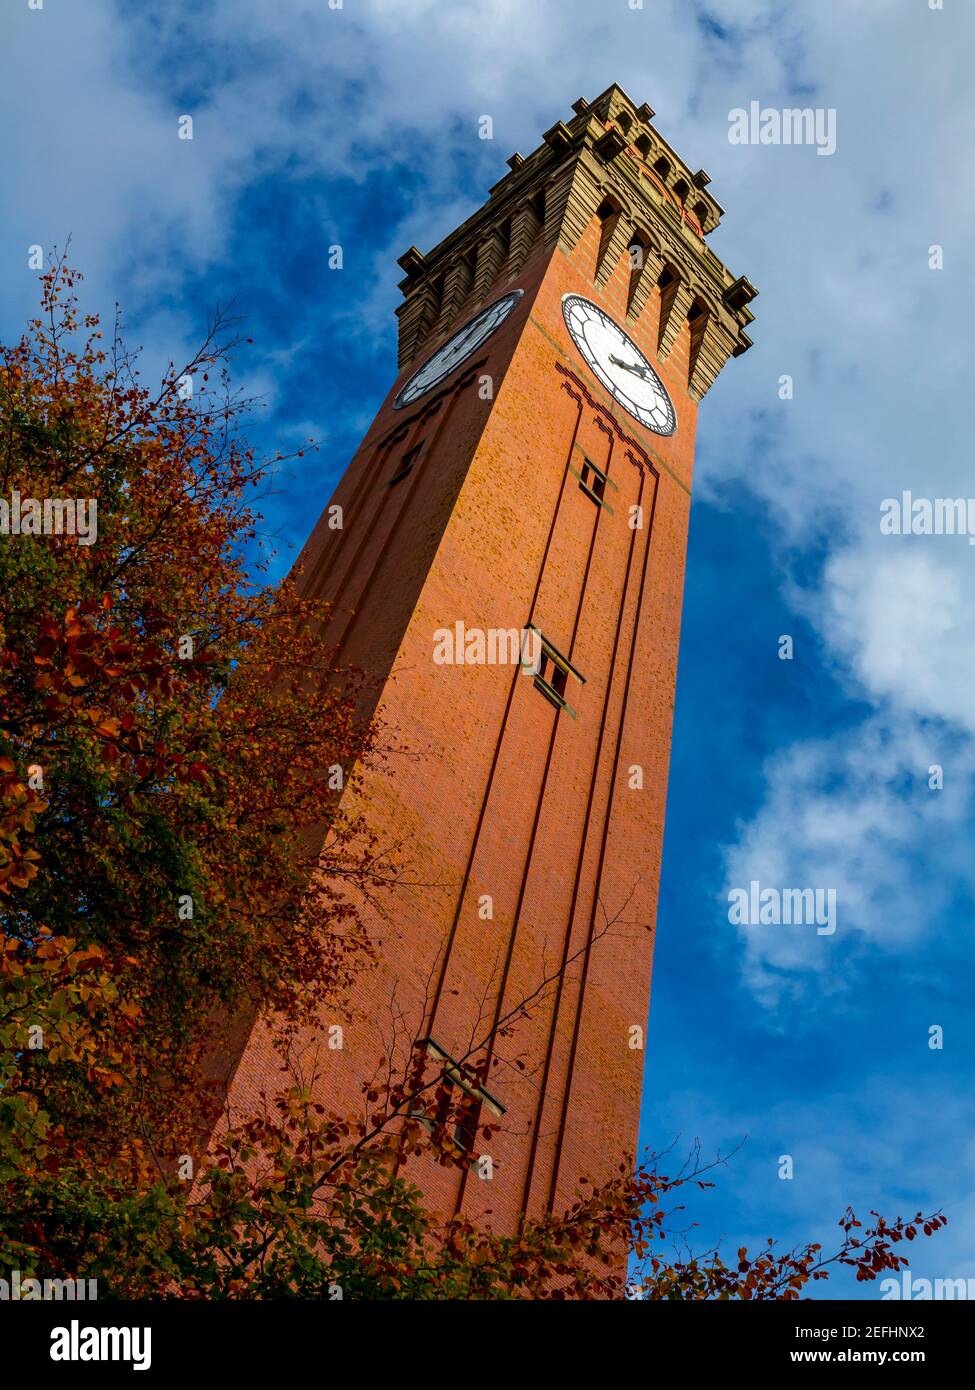 La torre dell'orologio Joseph Chamberlain Memorial all'Università di Birmingham Edgbaston UK la torre dell'orologio più alta del mondo costruito nel 1900-1908 Foto Stock